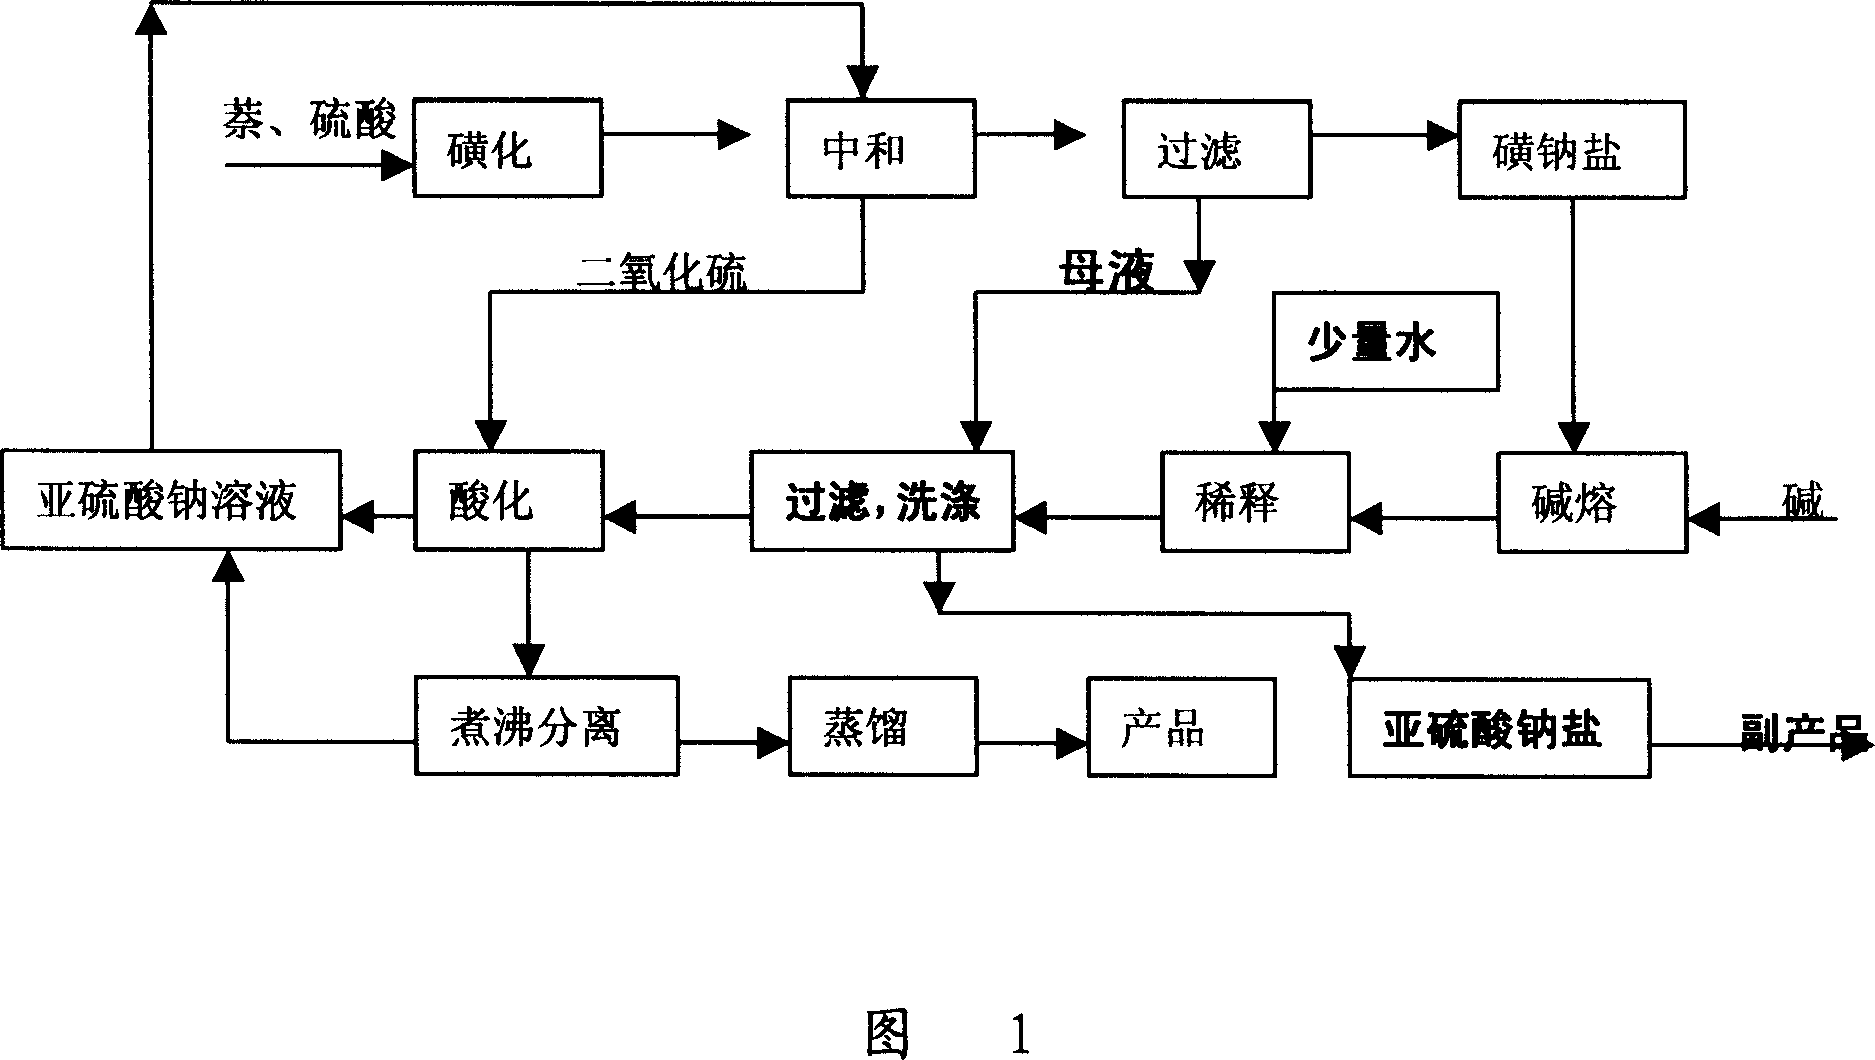 Method for circulated utilization of mother liquor of alpho-naphthol, beta-naphthol ethyl naphthol production